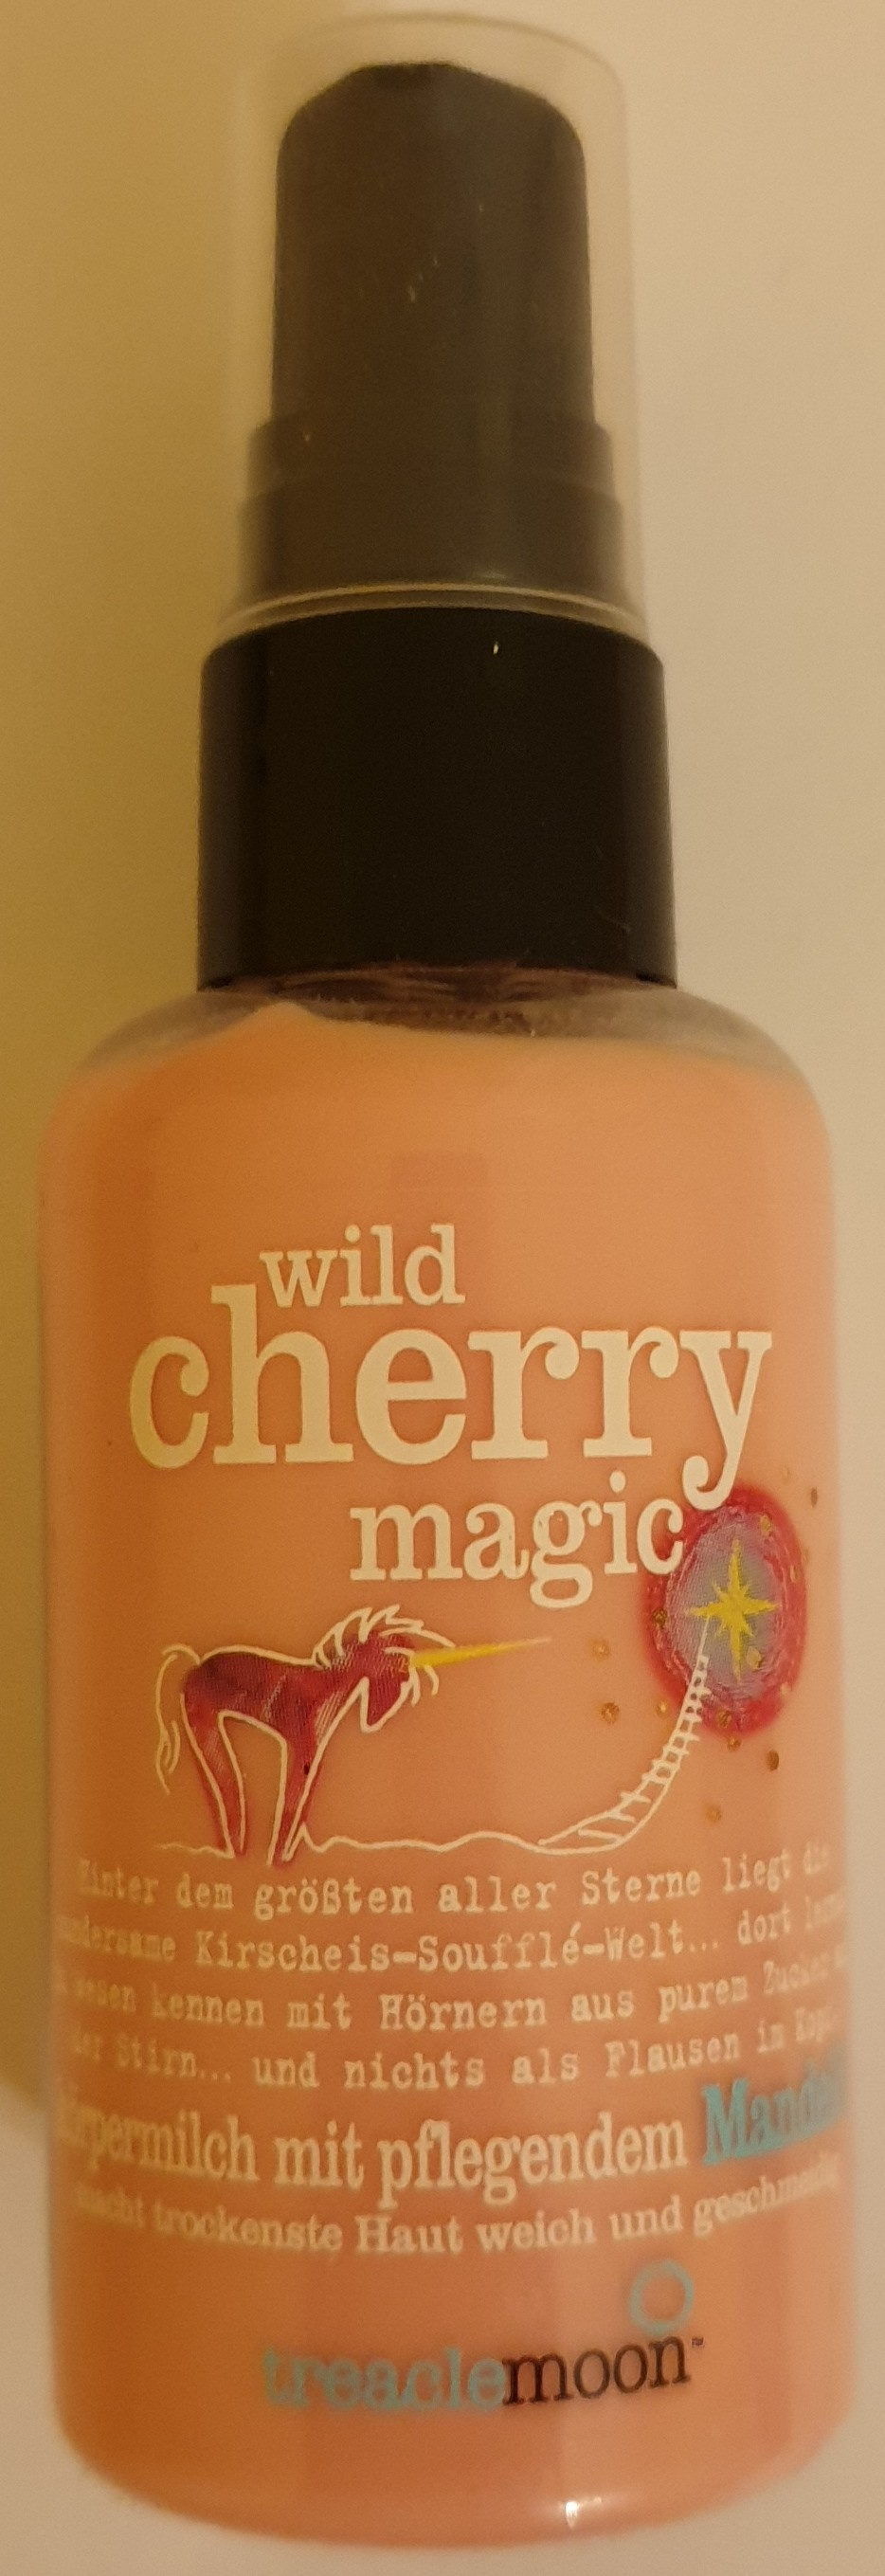 wild cherry magic - Produit - de